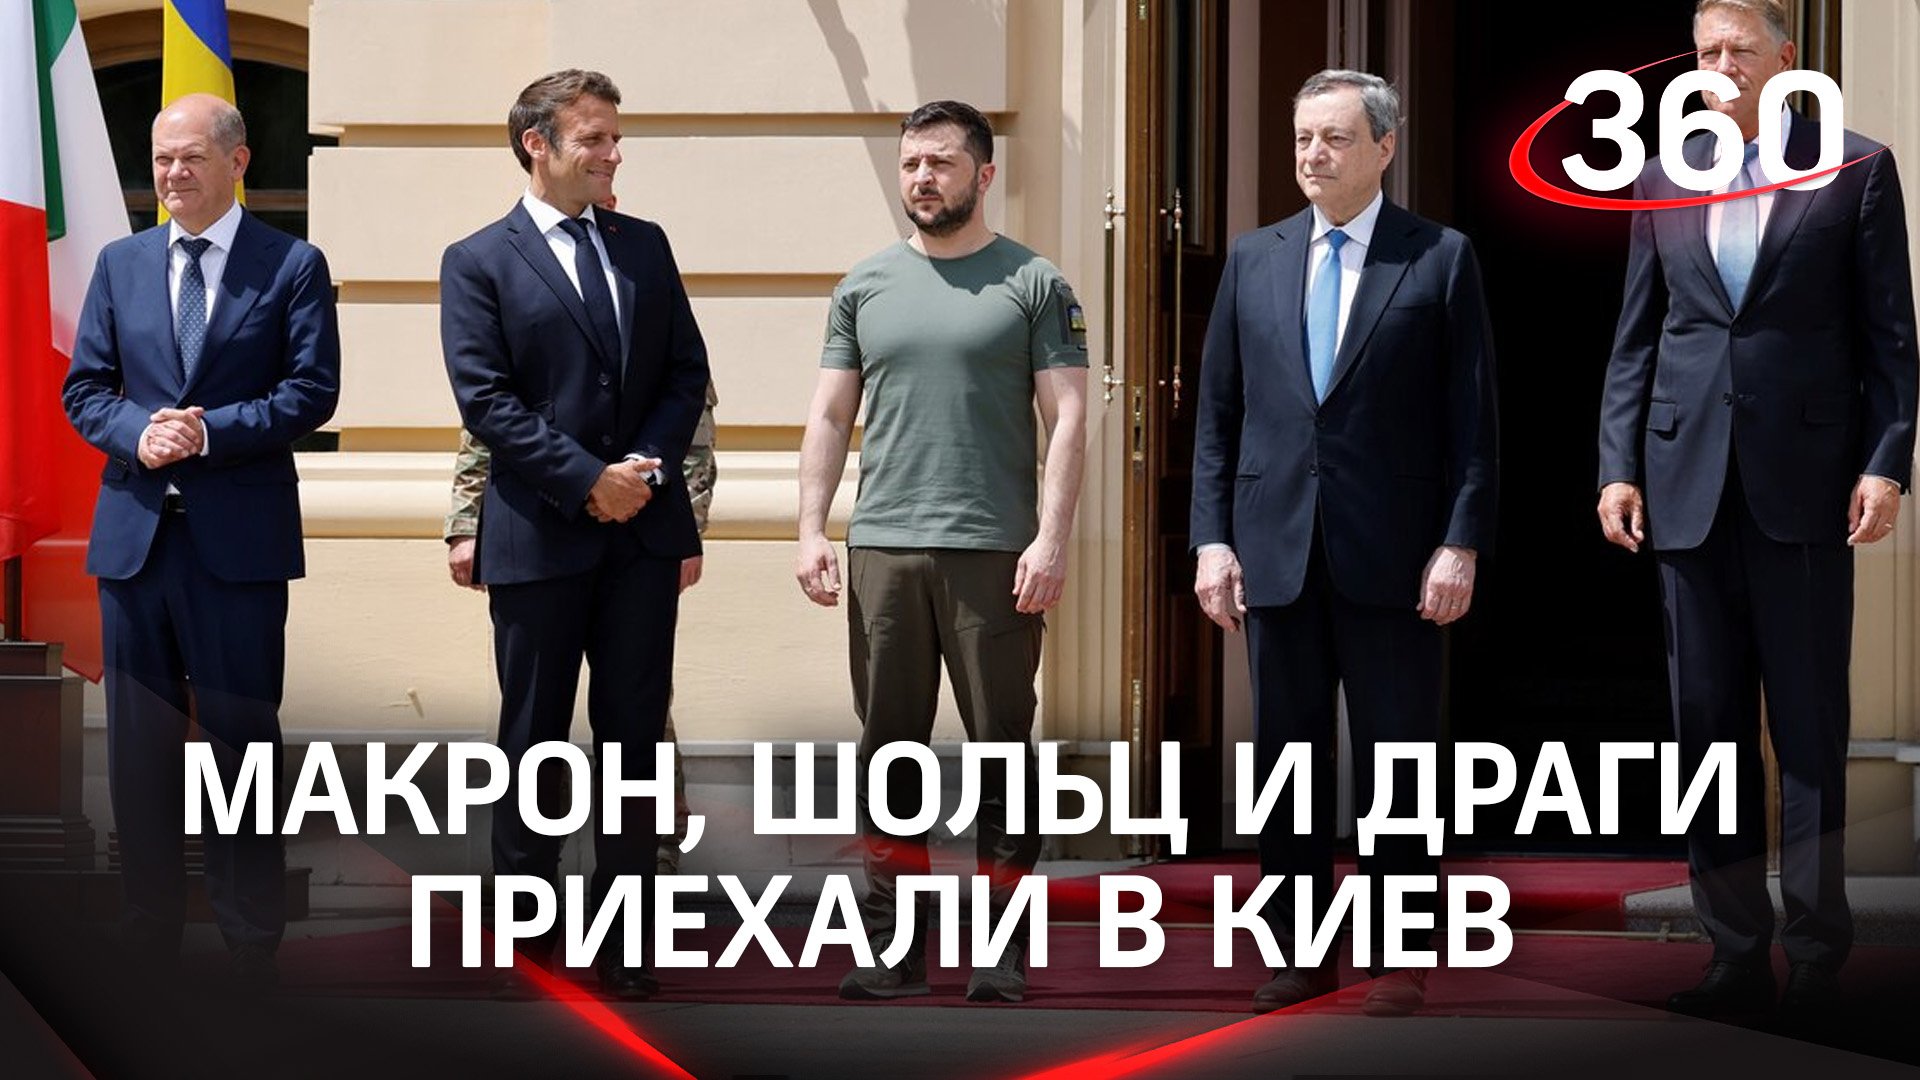 В Киев приехала троица - Макрон, Шольц и Драги. Европейских лидеров испугала боевая тревога